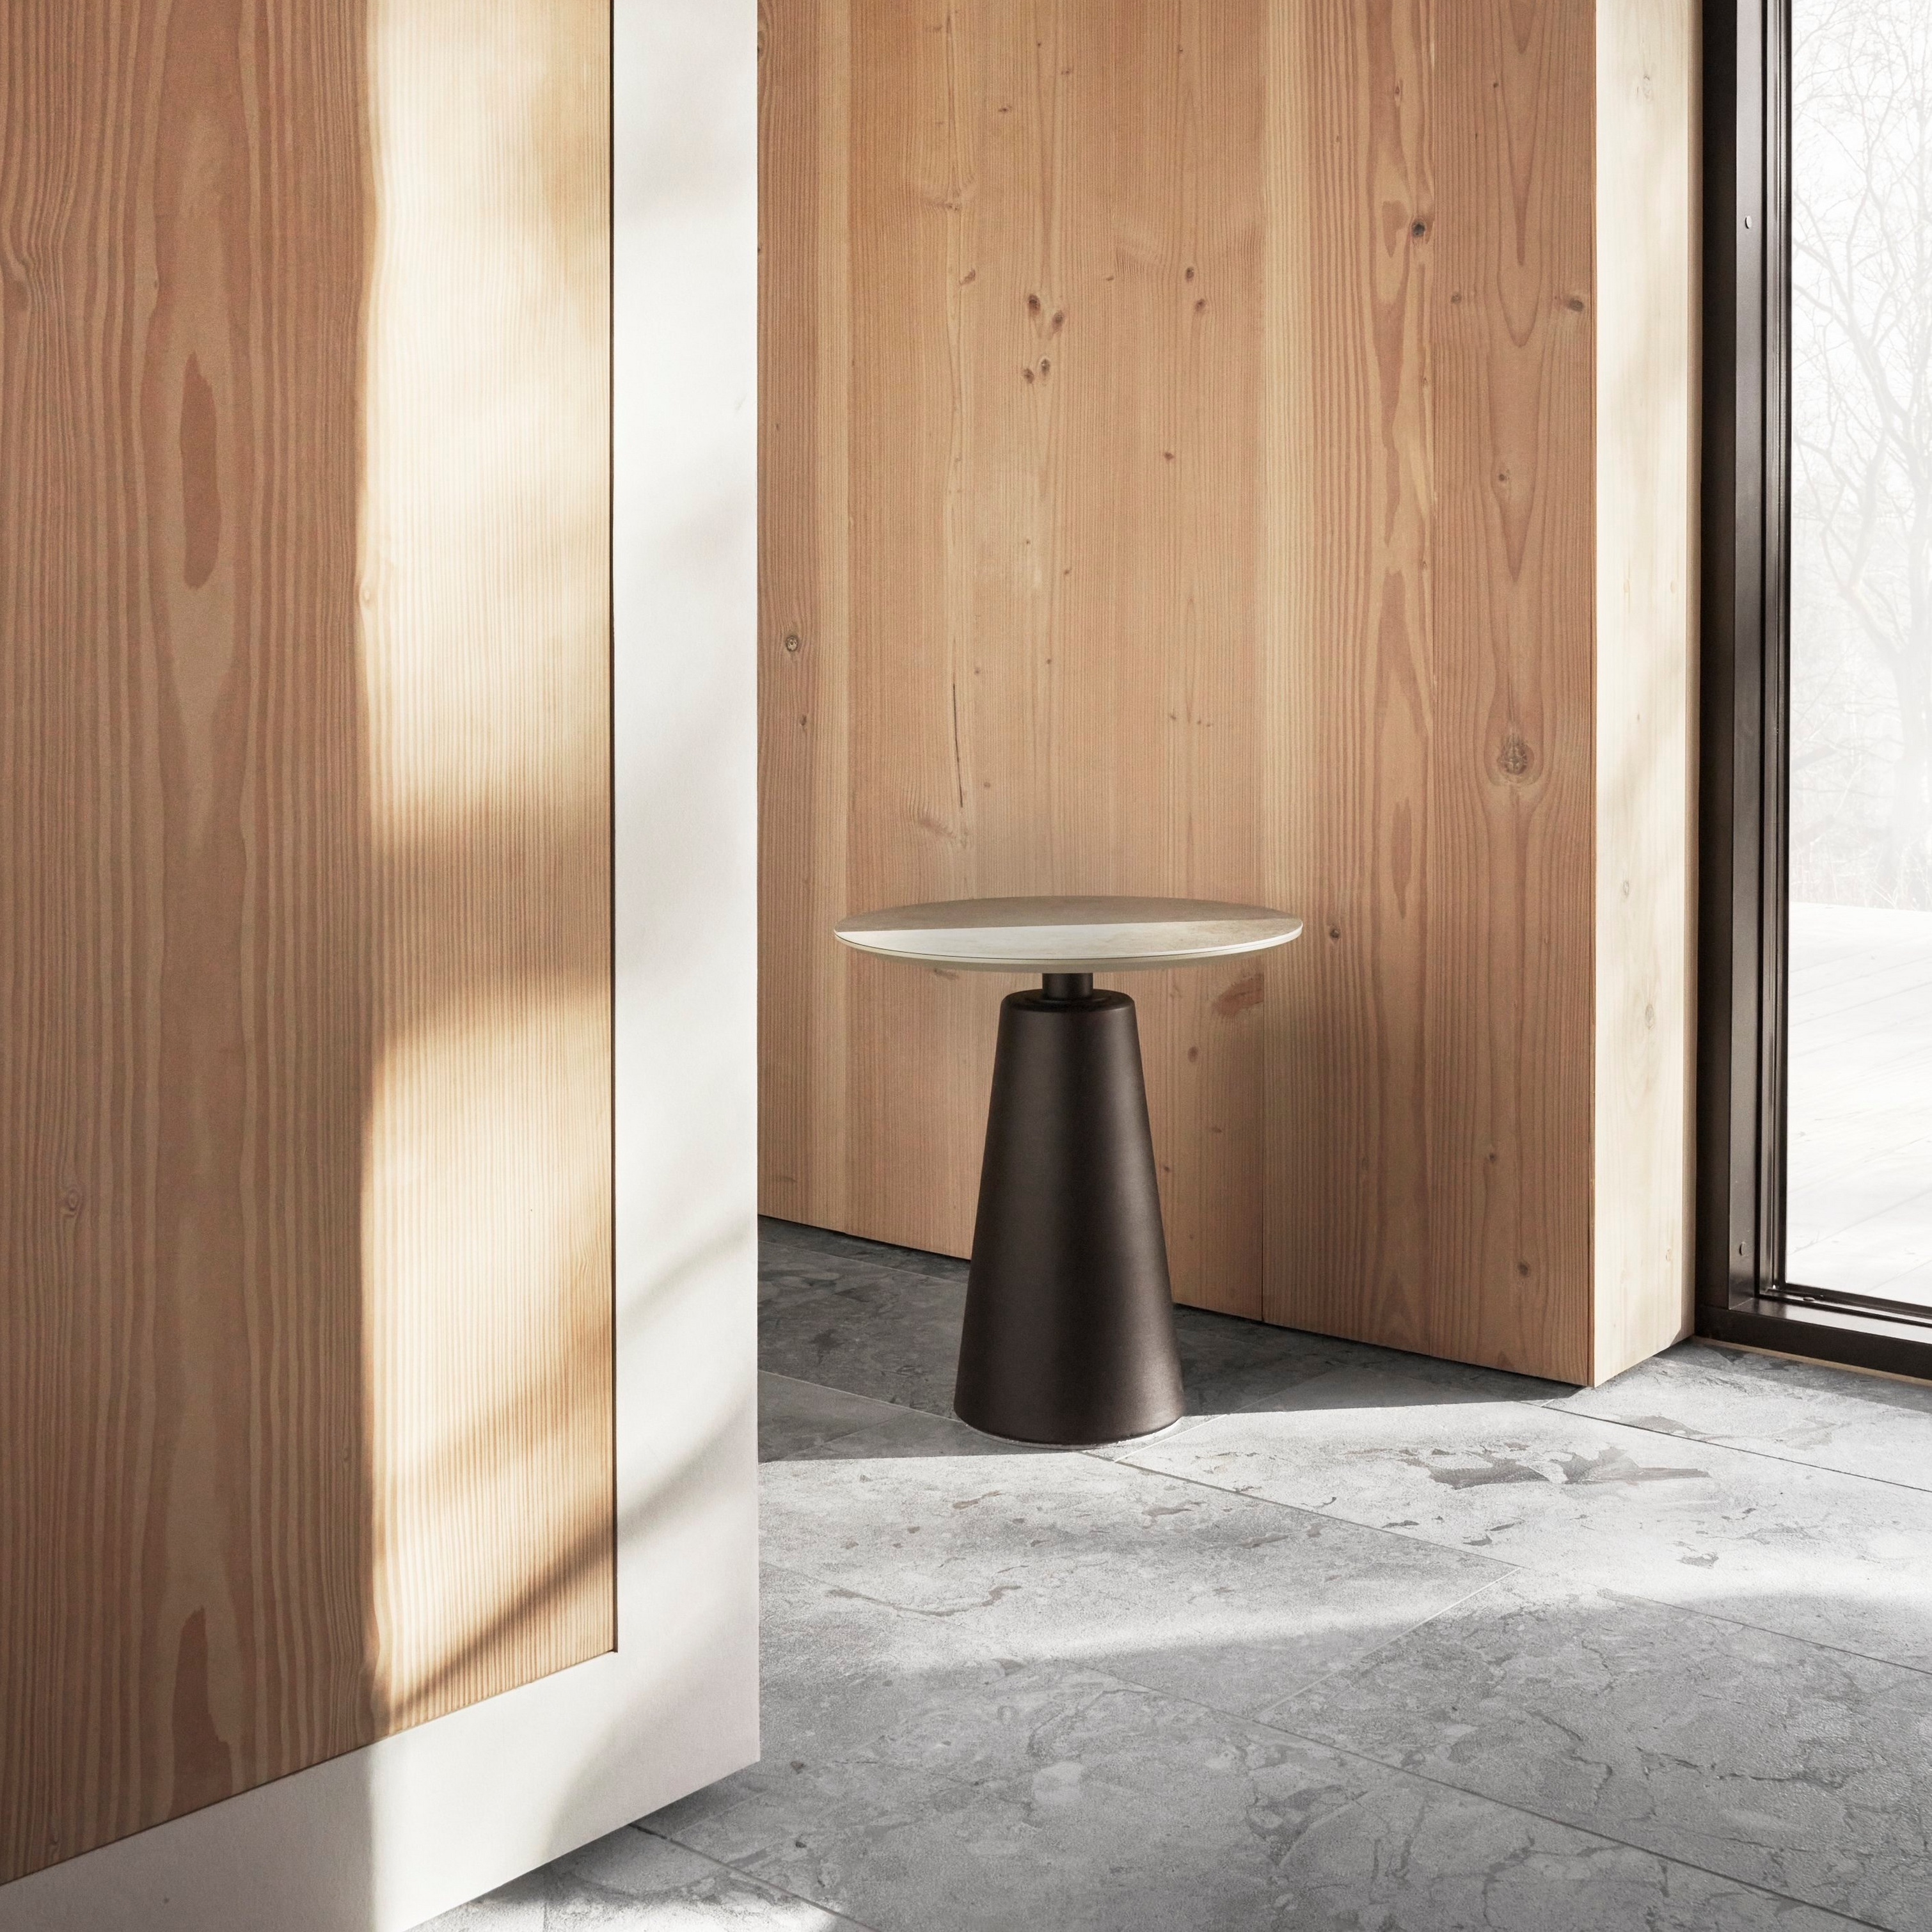 Minimalistyczna przestrzeń z drewnianymi ścianami, prostym stolikiem pomocniczym i naturalnym światłem wpadającym przez duże okna.